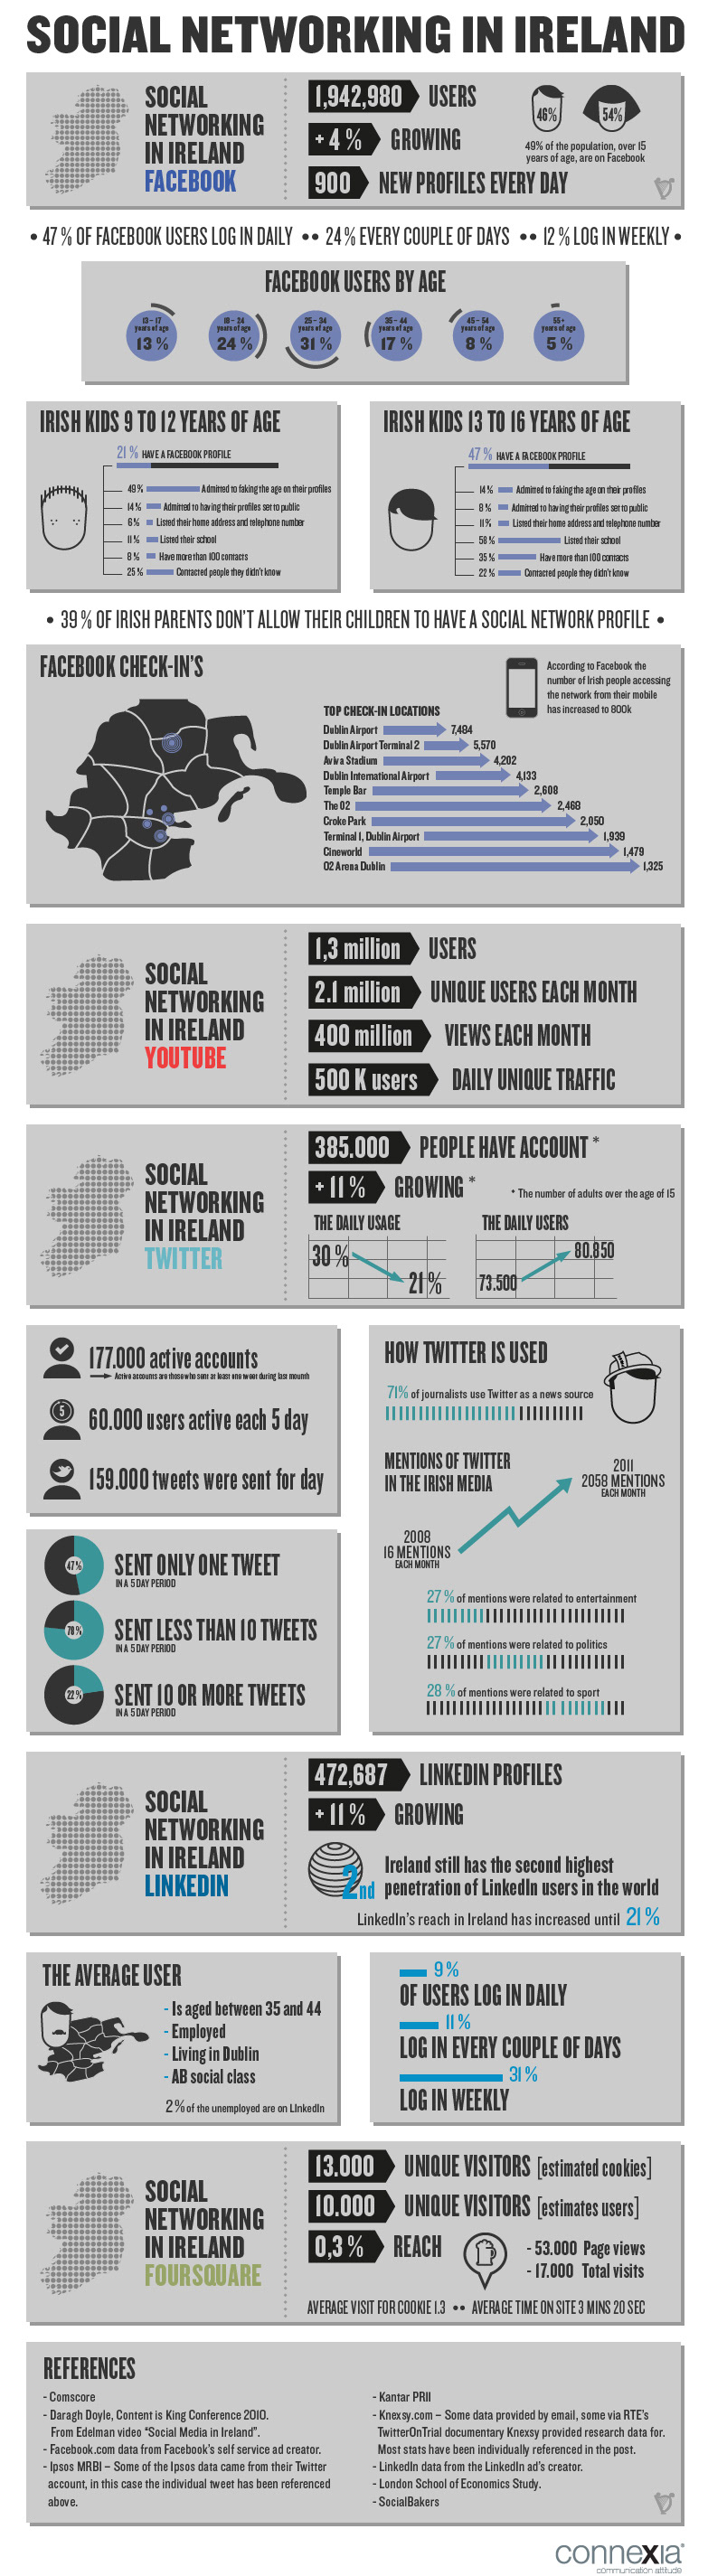 social networking network Ireland infographic twitter fouresquare Linkedin youtube Data data design infodata infografica Icon